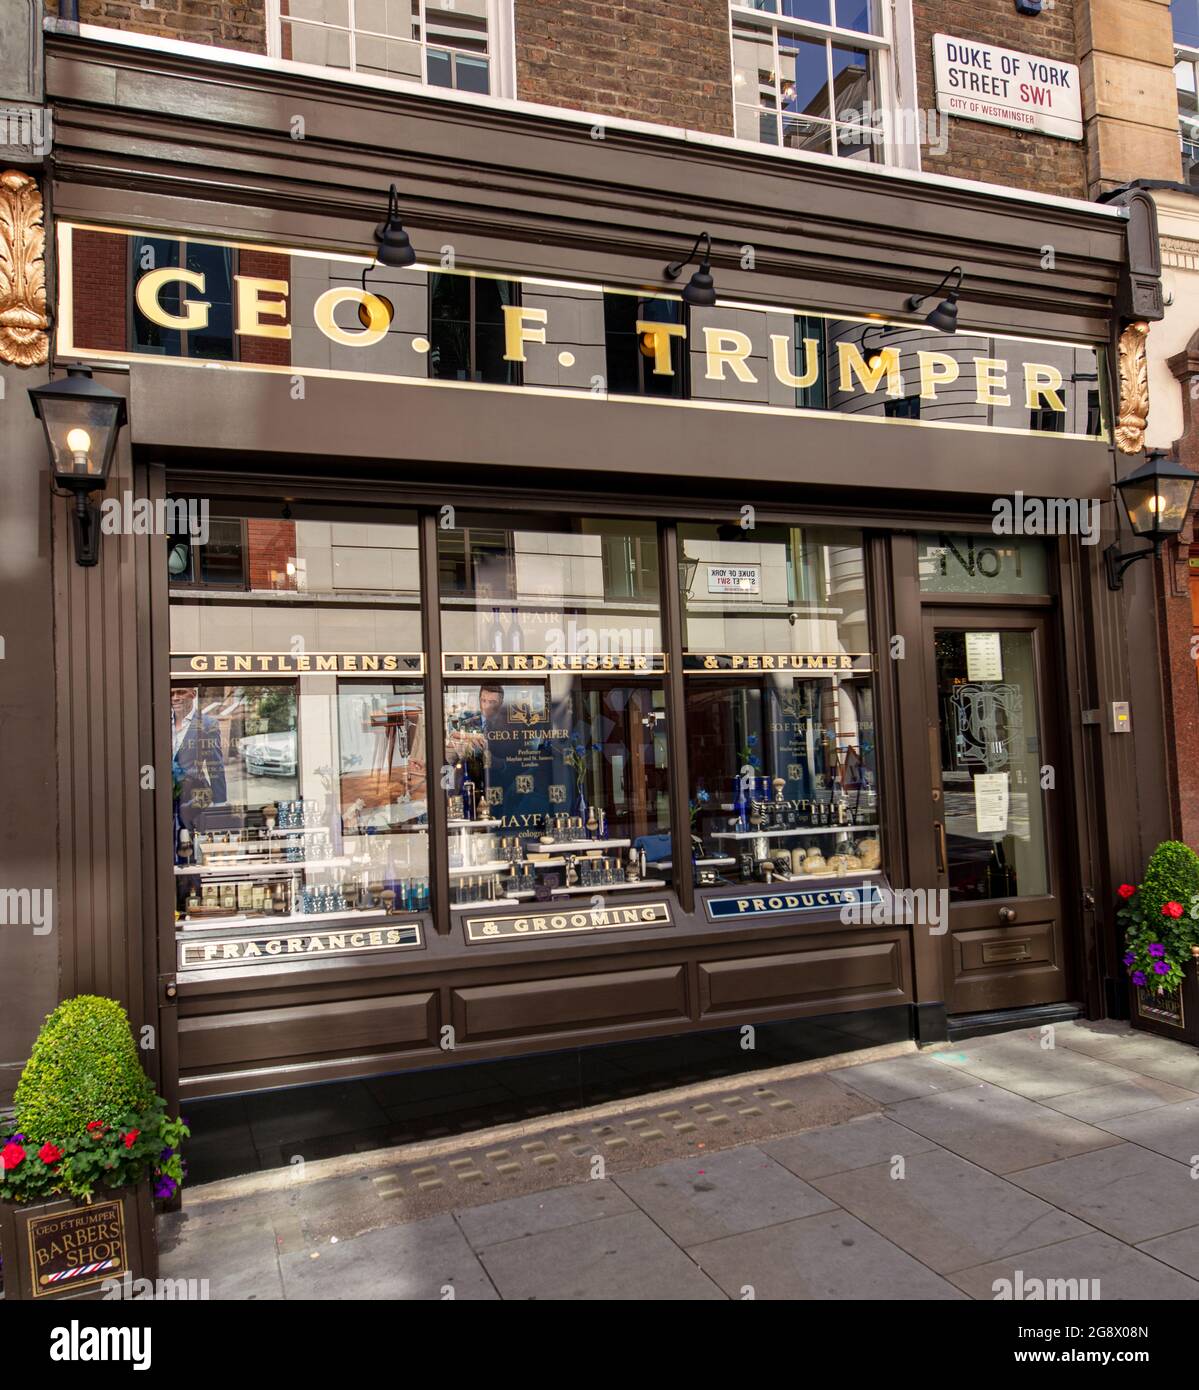 Geo. F. Trumper (Trumper's), barber, hairdresser and perfumer, at 1 Duke of York St, St James's London, UK; established 1875 by x1 Duke of York St. Stock Photo